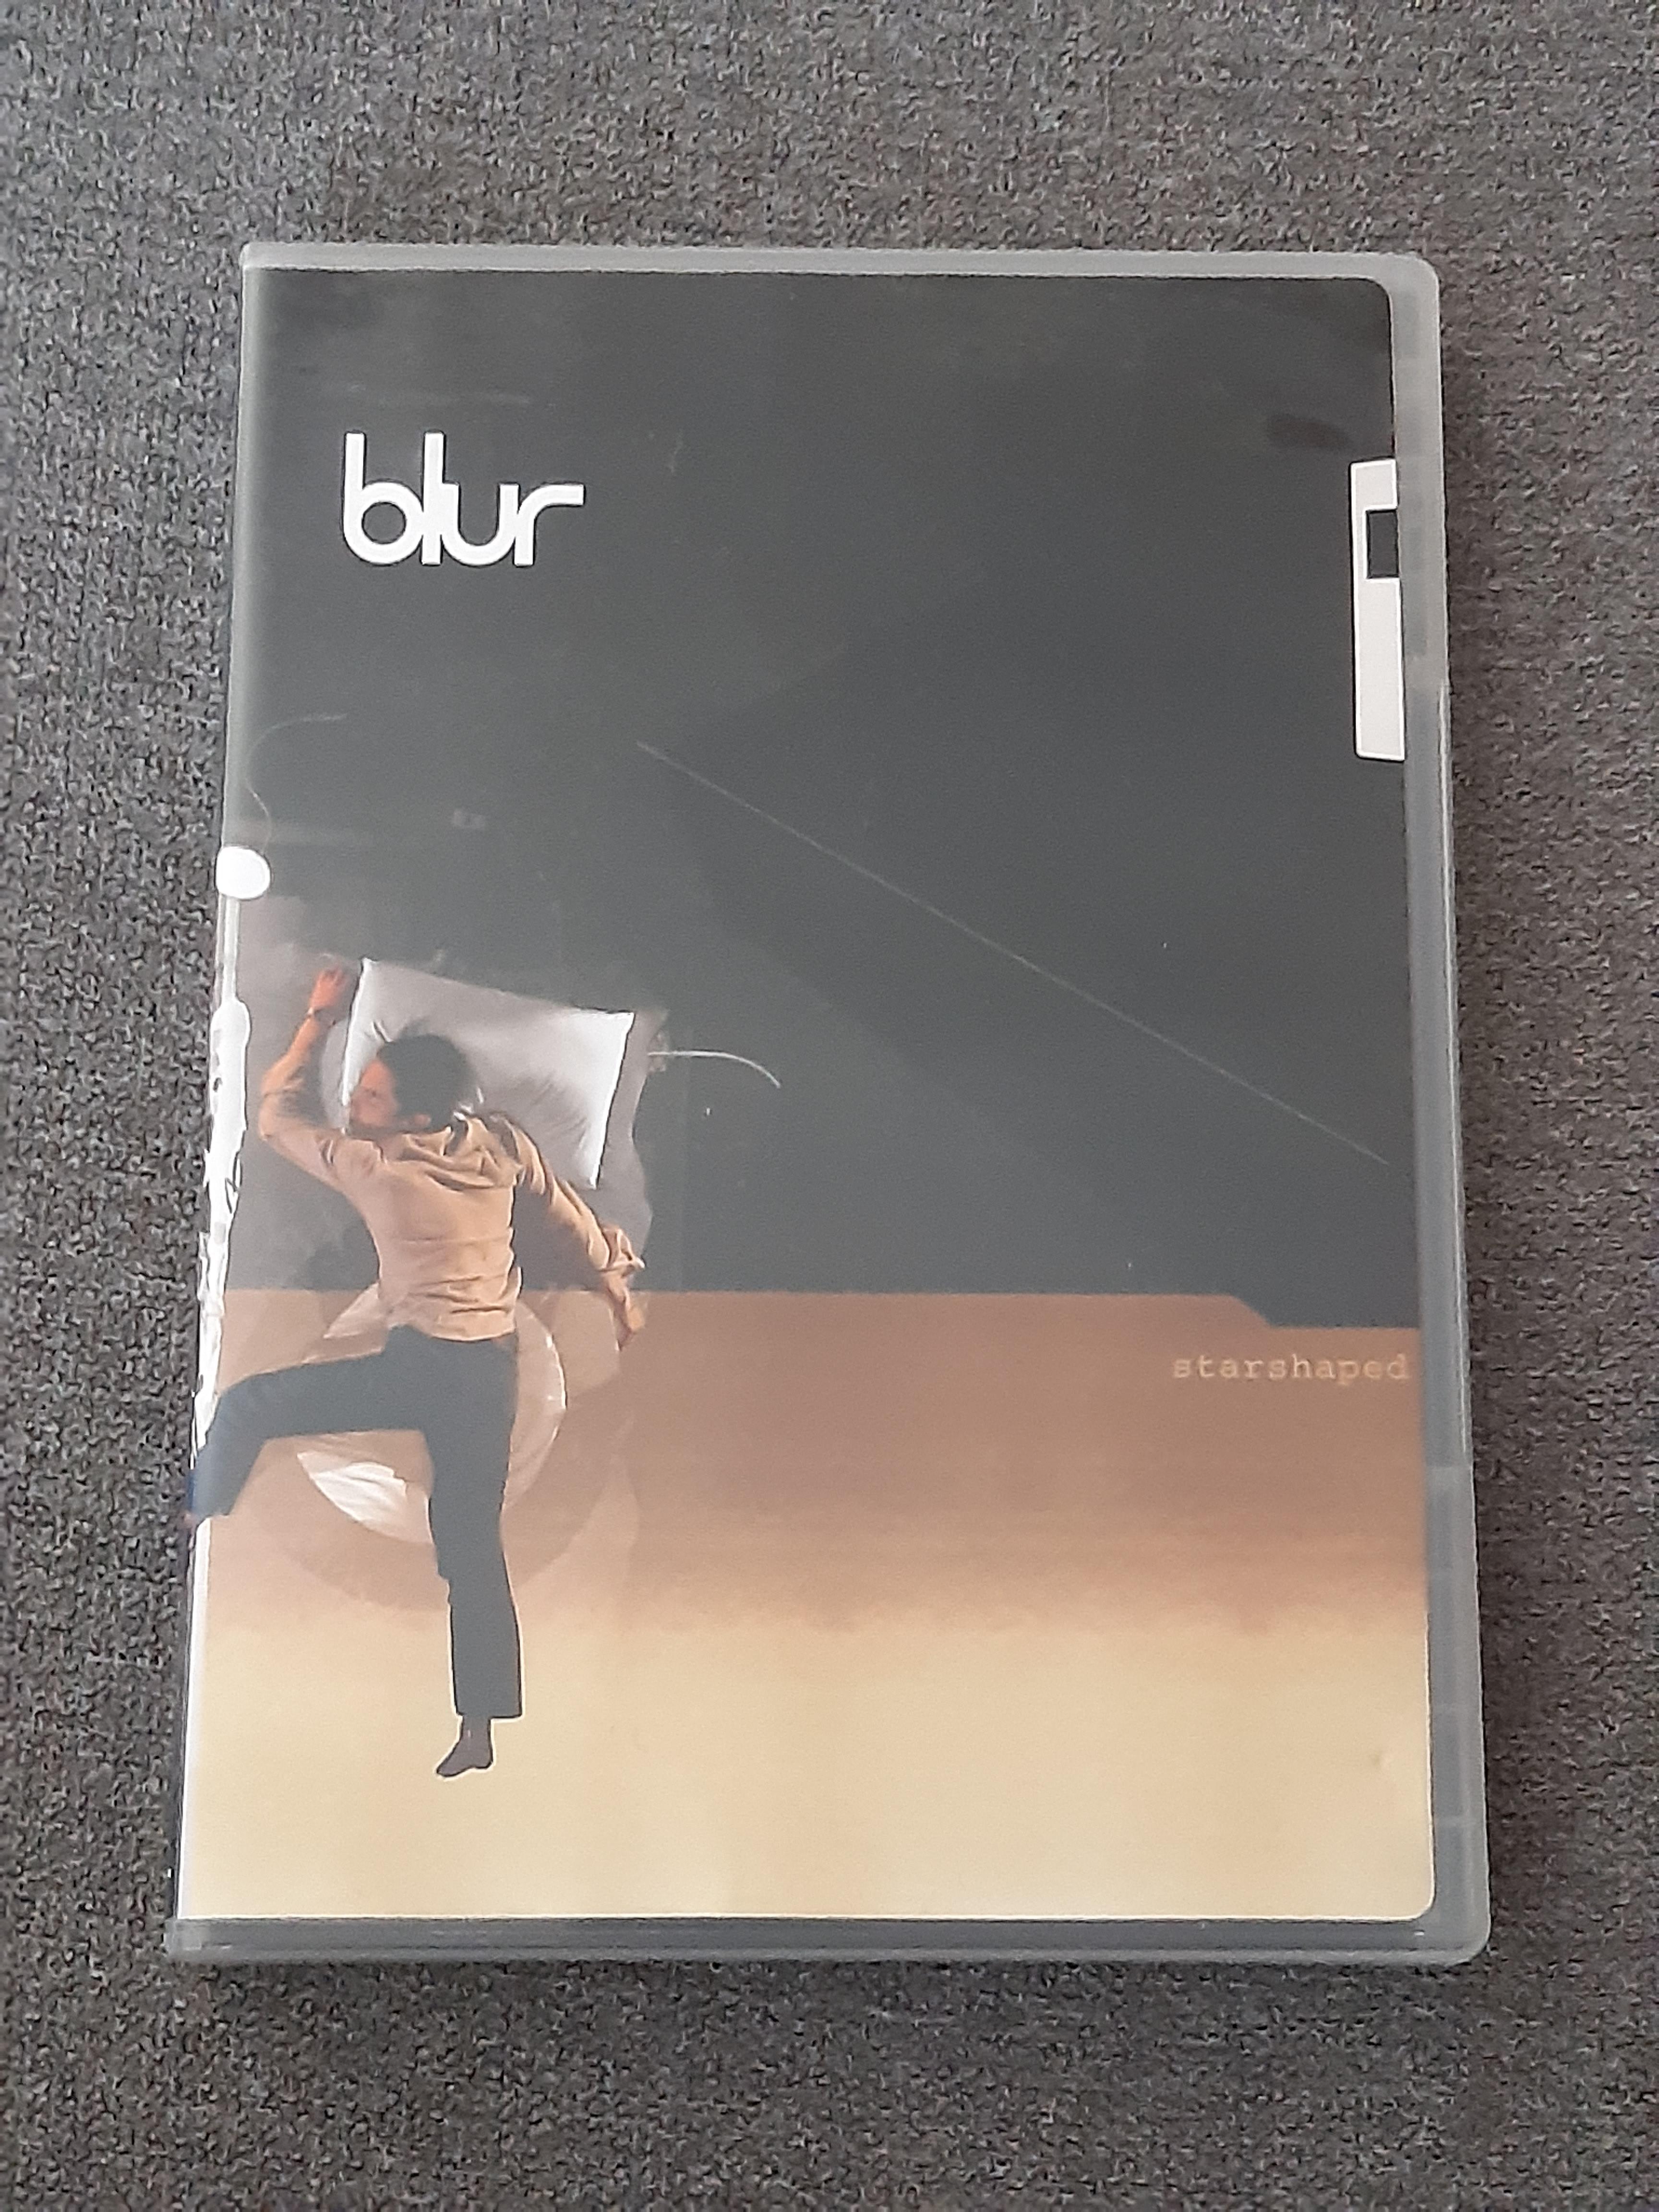 Blur - Starshaped - DVD (käytetty)